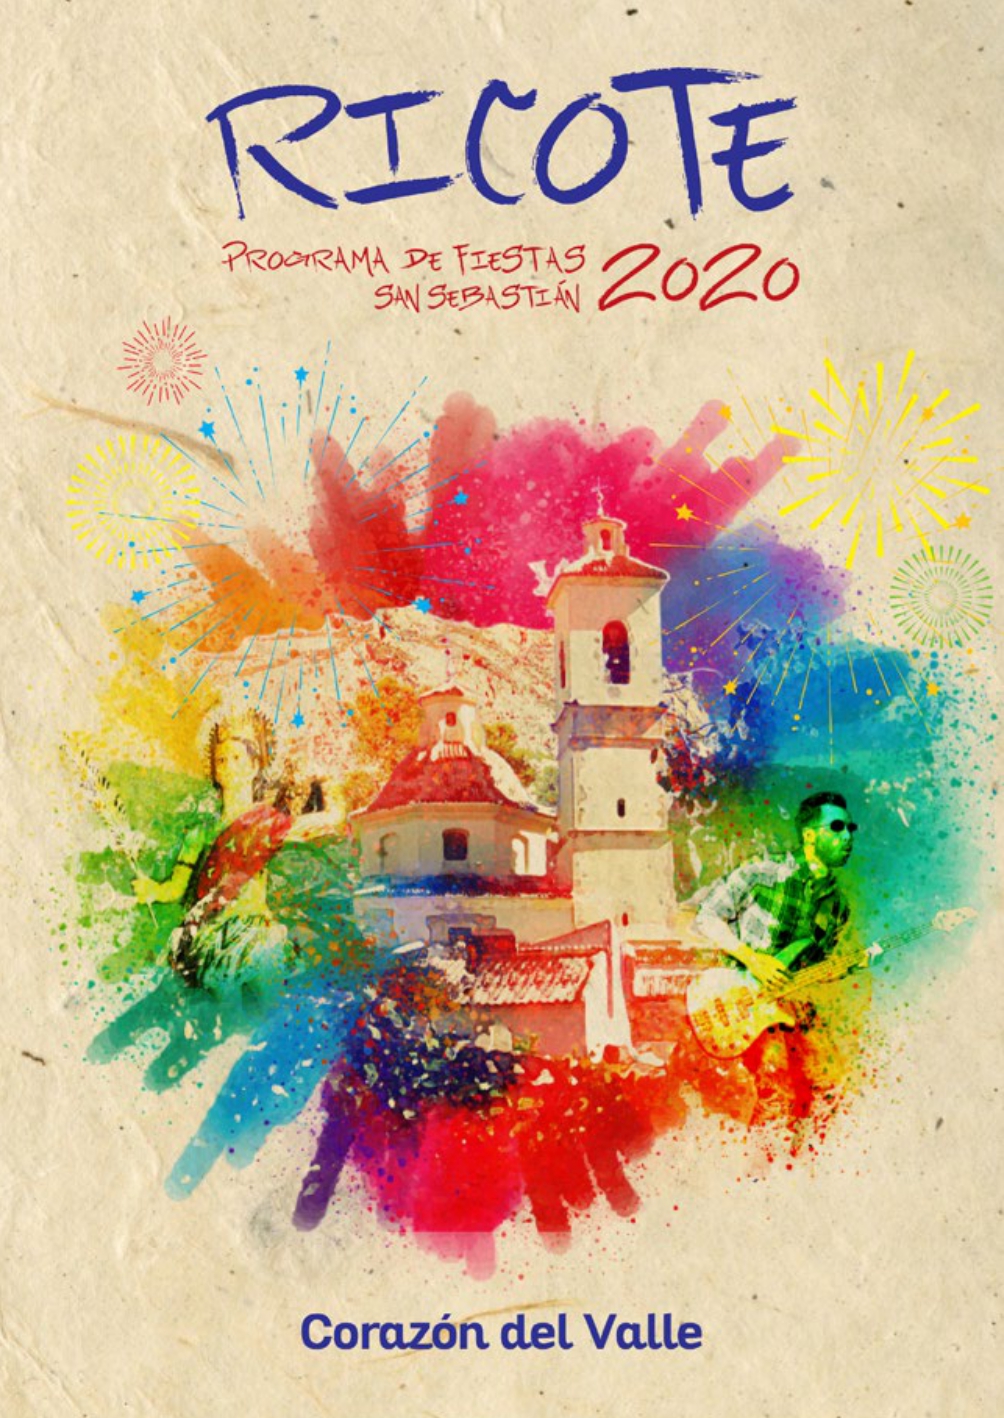 programa-fiestas-ricote-2020_page-0001.jpg